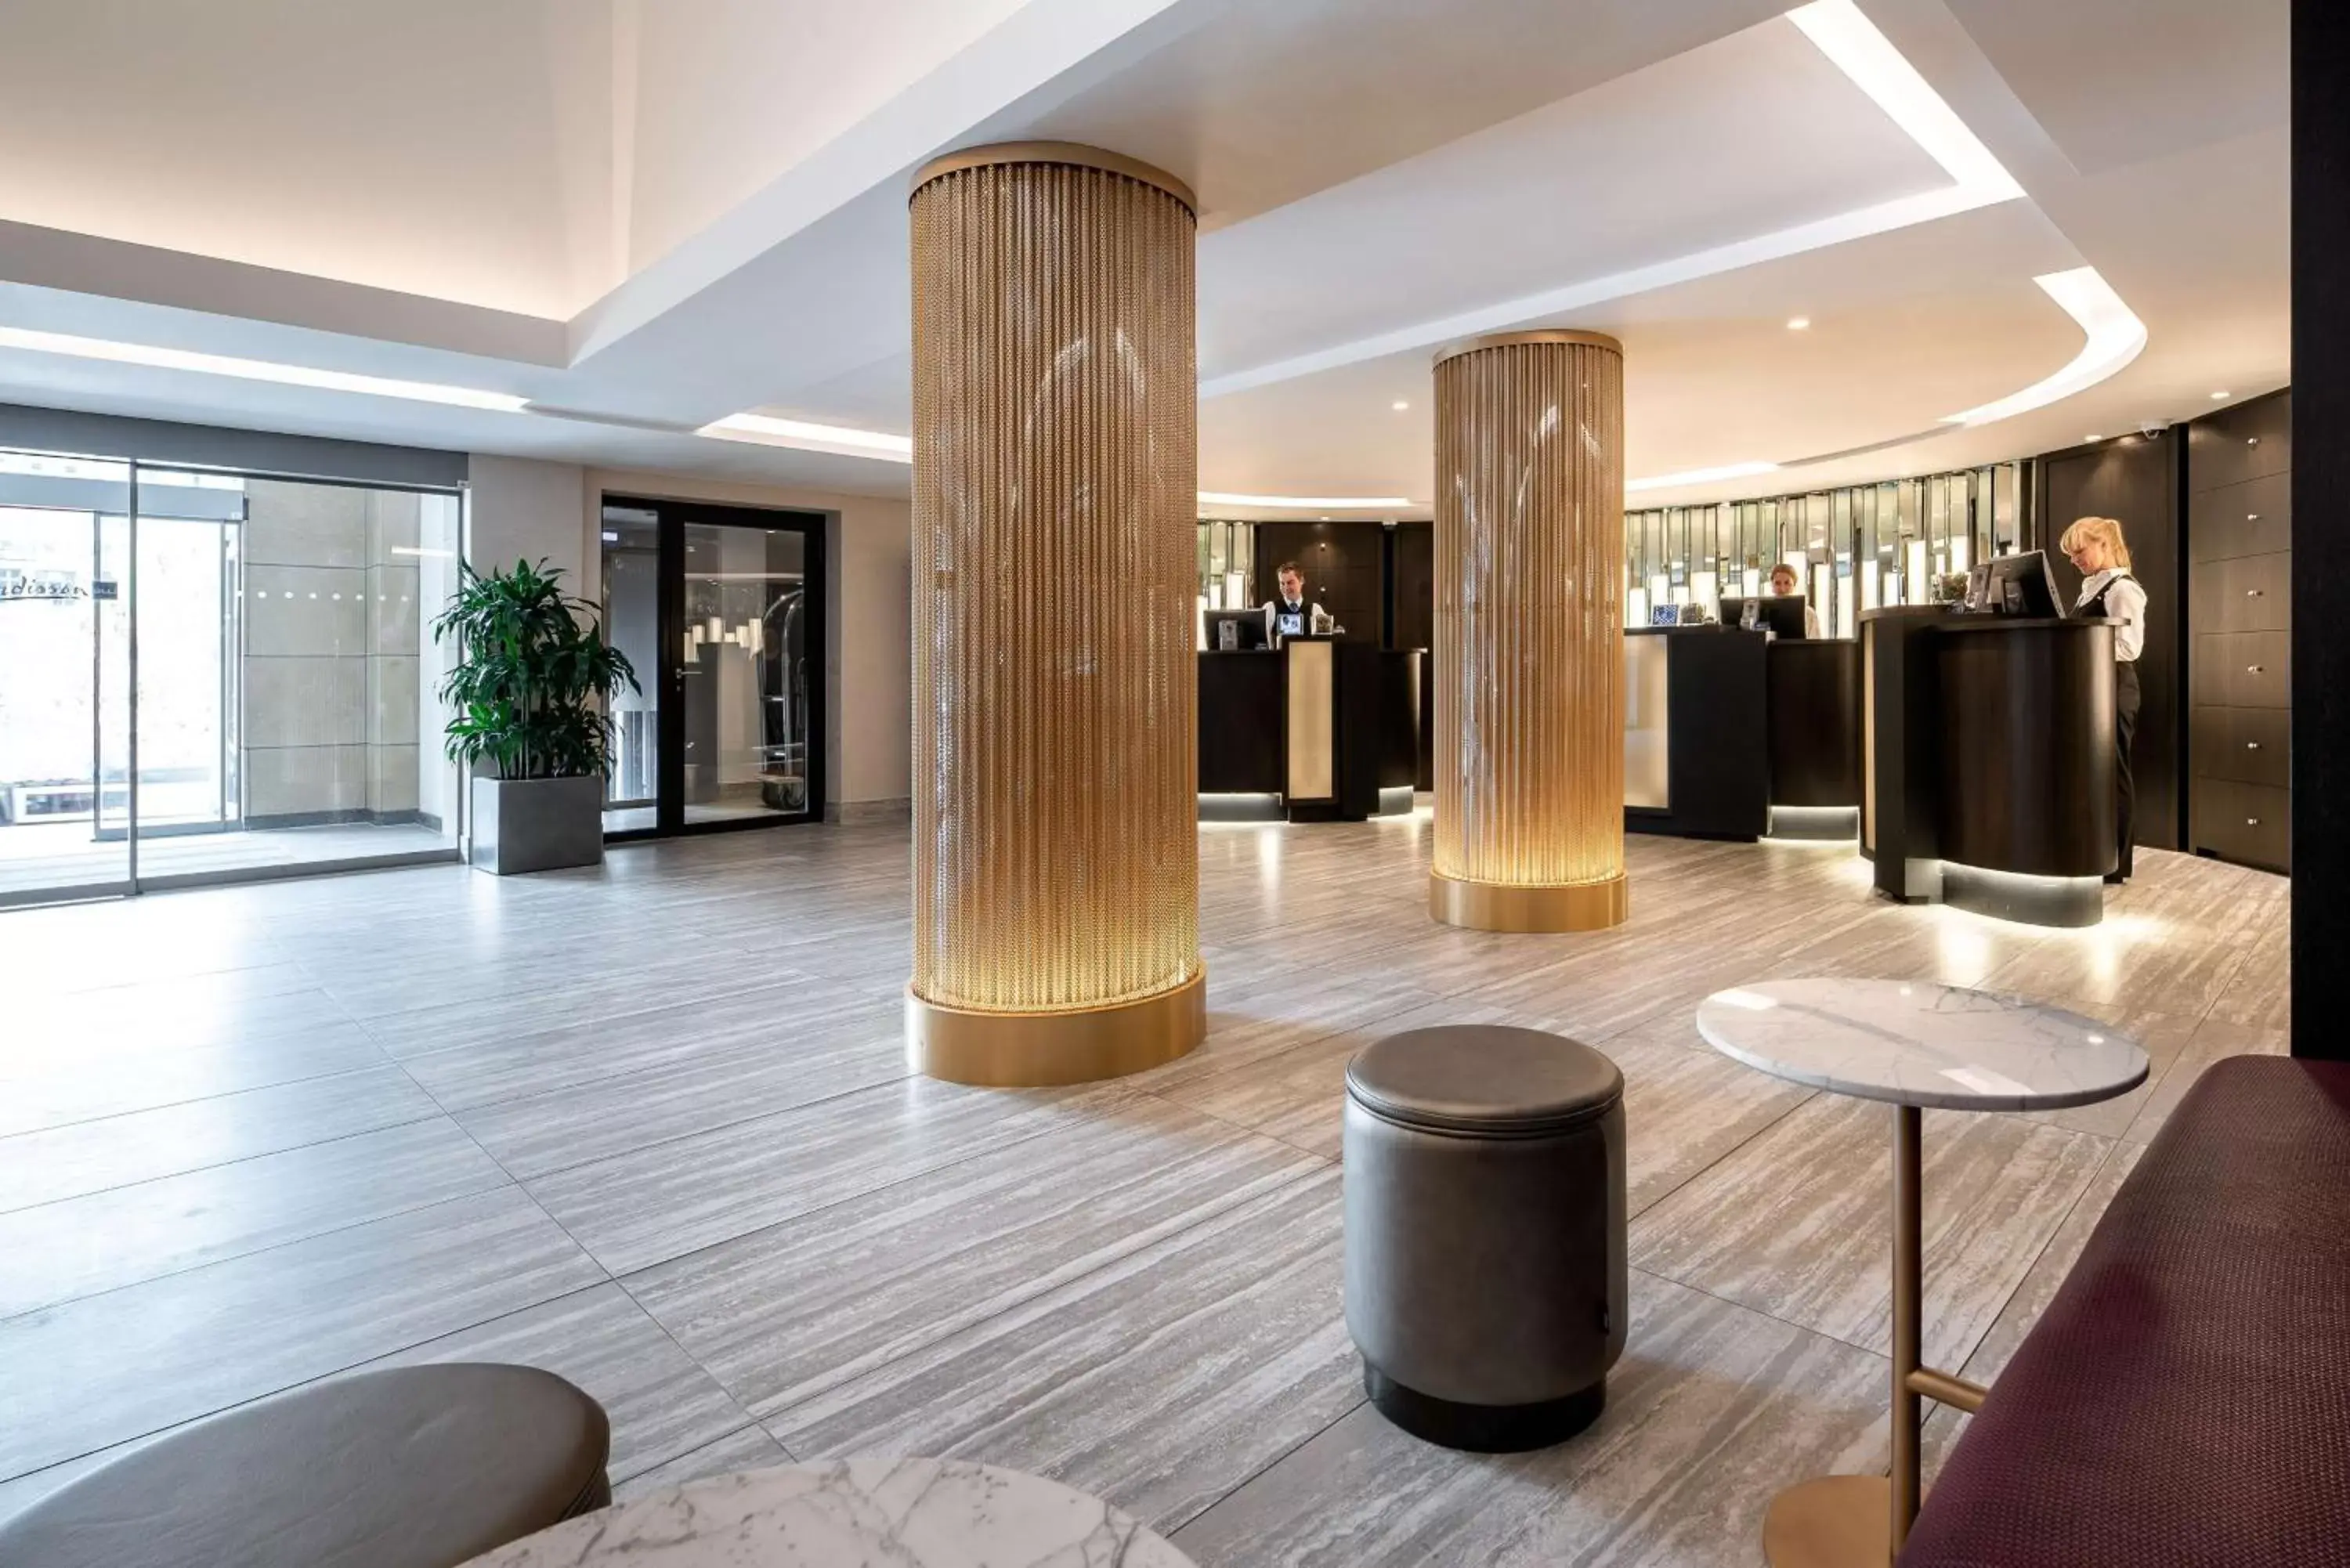 Lobby or reception, Lobby/Reception in Radisson BLU Astrid Hotel, Antwerp